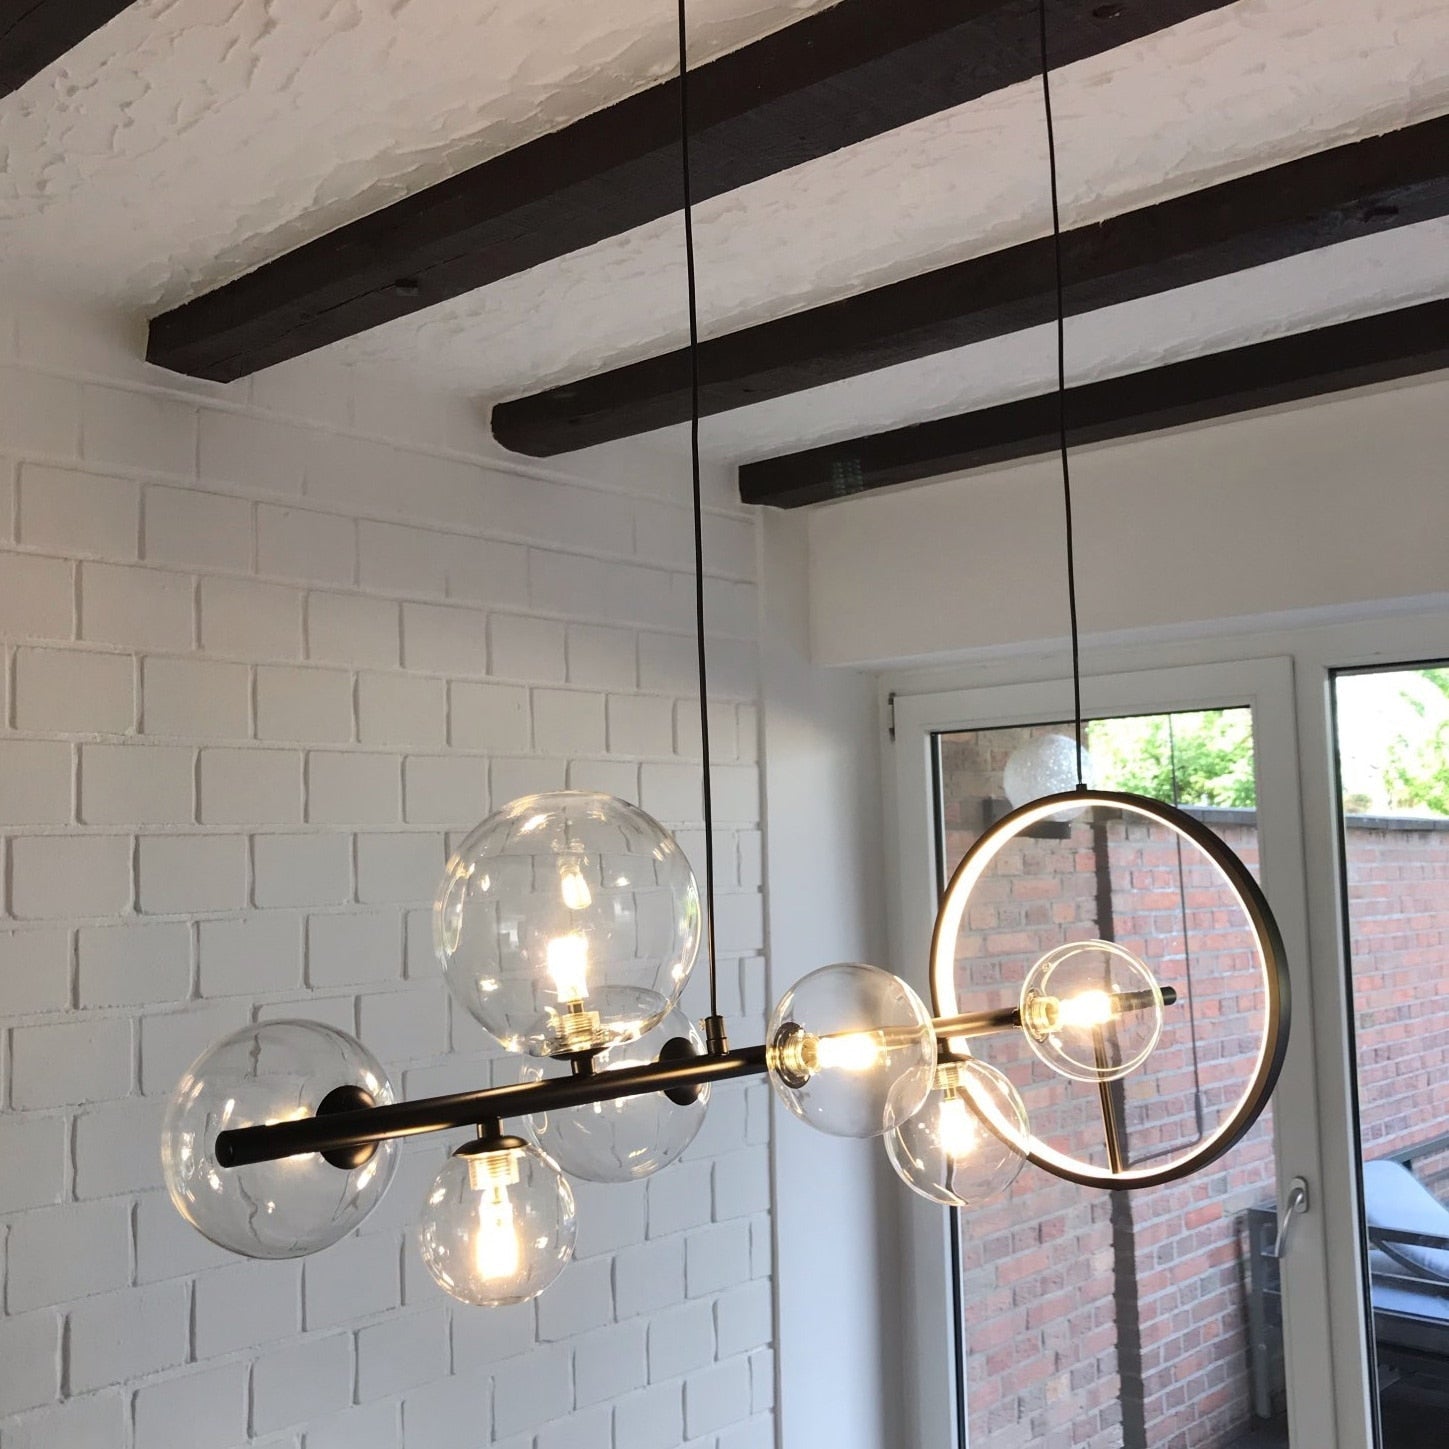 Dining Room Pendant Lighting | Modern Chandelier For Living | Kitchen | Casalola - Semi-flush Mounts